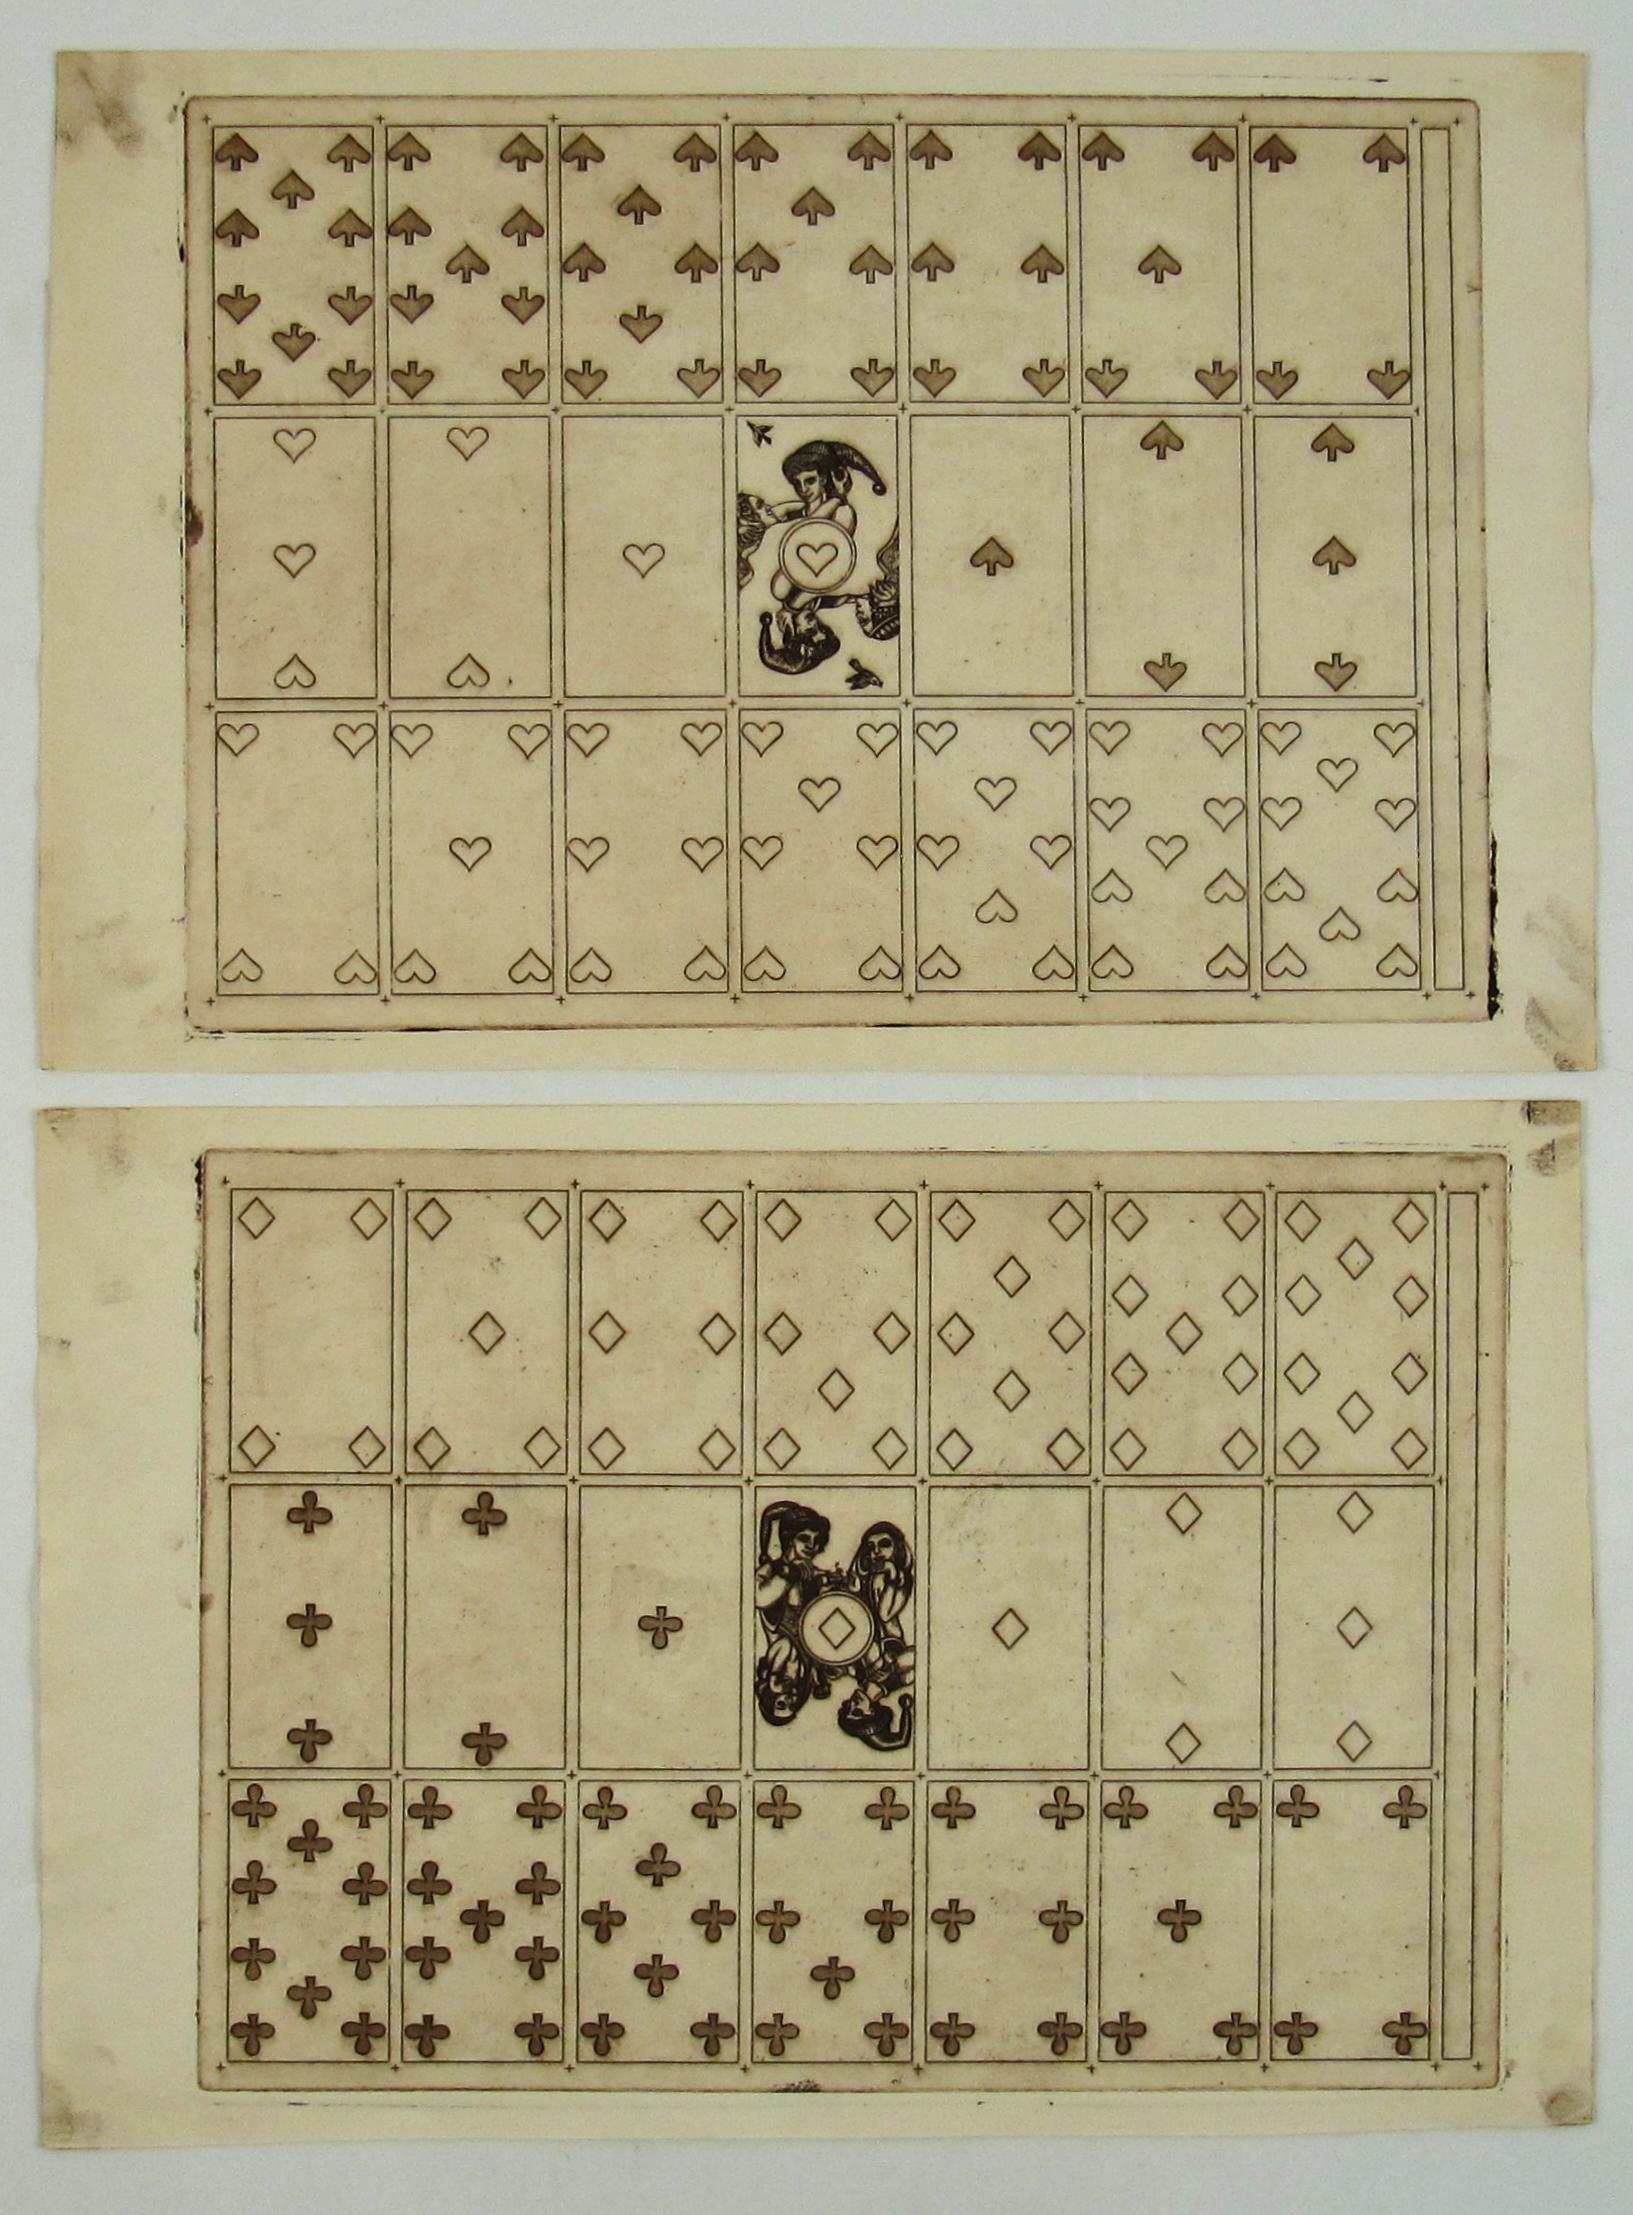 Merry Andrew n° 30, 1989 par Karl Gerich of Bath - Deux échantillons d'impression de cartes de jeu